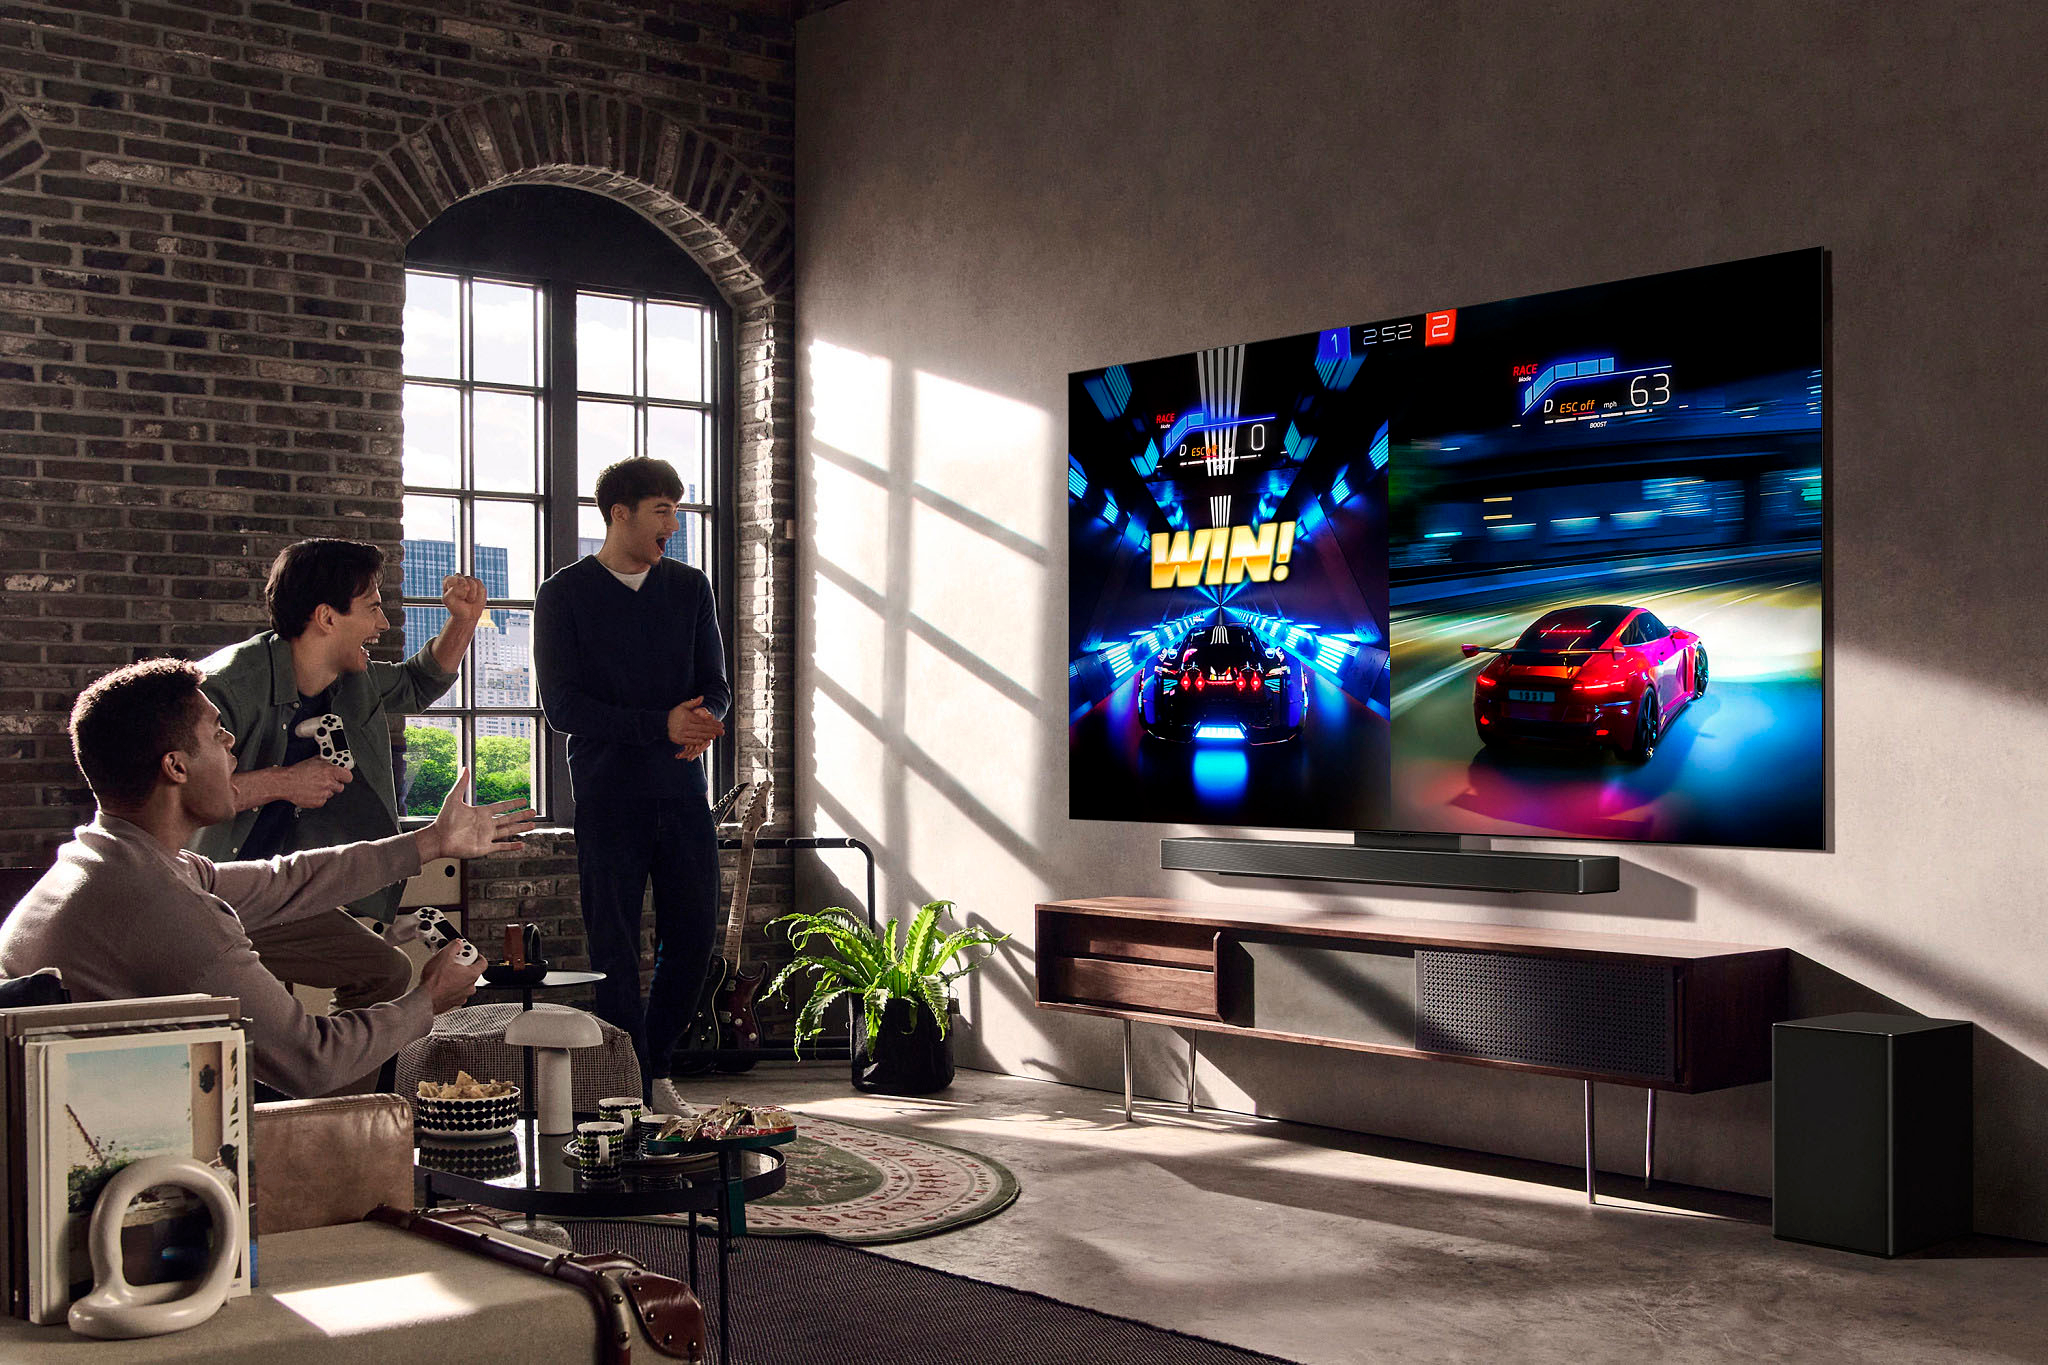 LG OLED evo C3 65 (164cm) 4K Smart TV, TV Wall Design, WebOS, Dolby  Vision - OLED65C3PSA